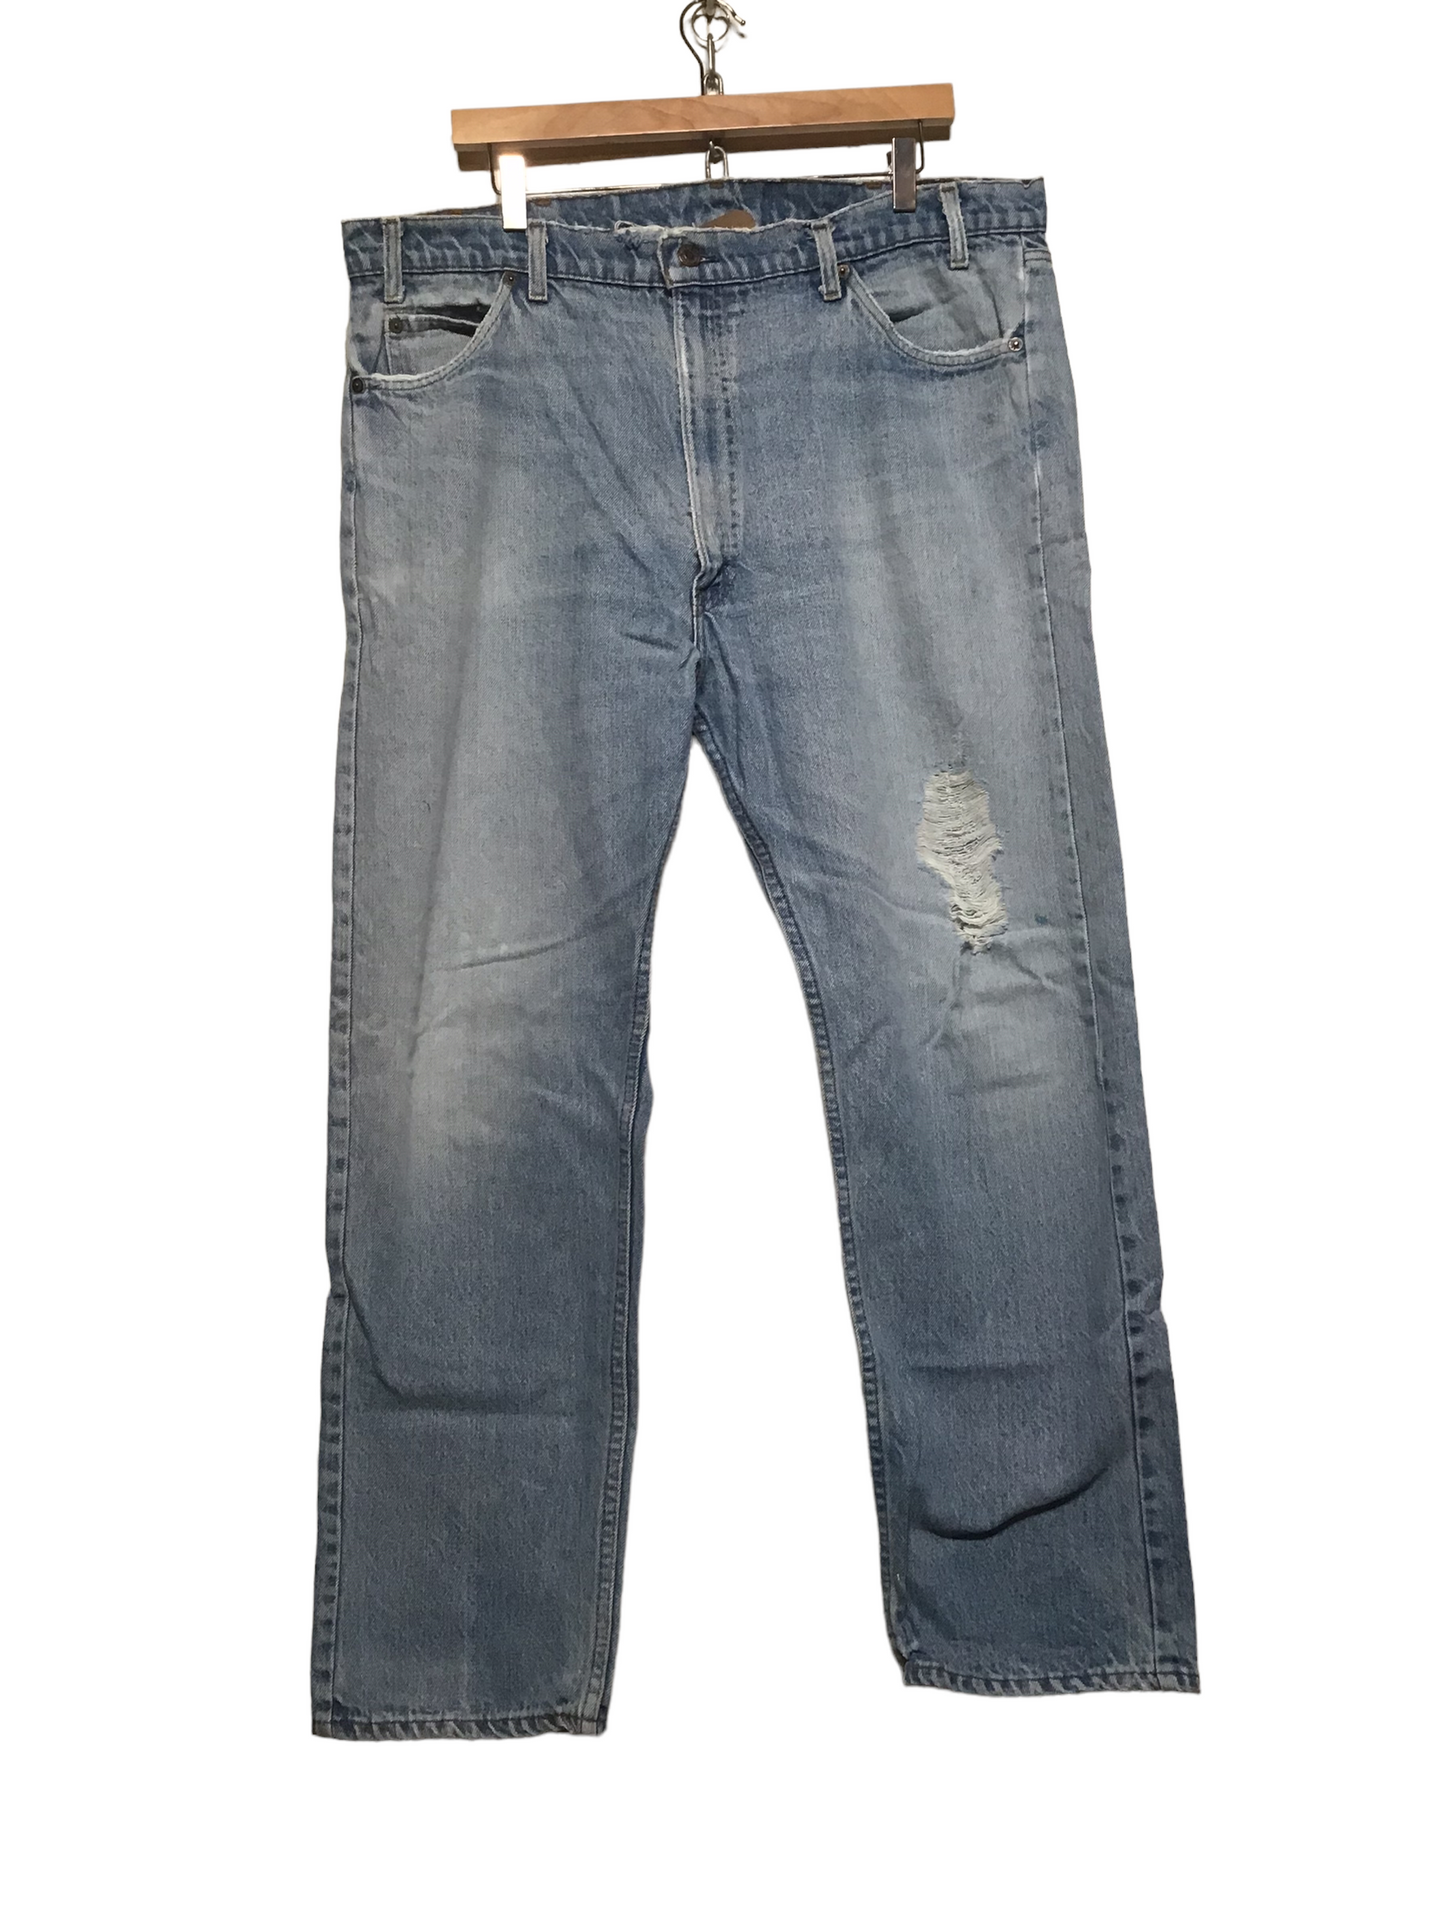 Levi Jeans (40X30)